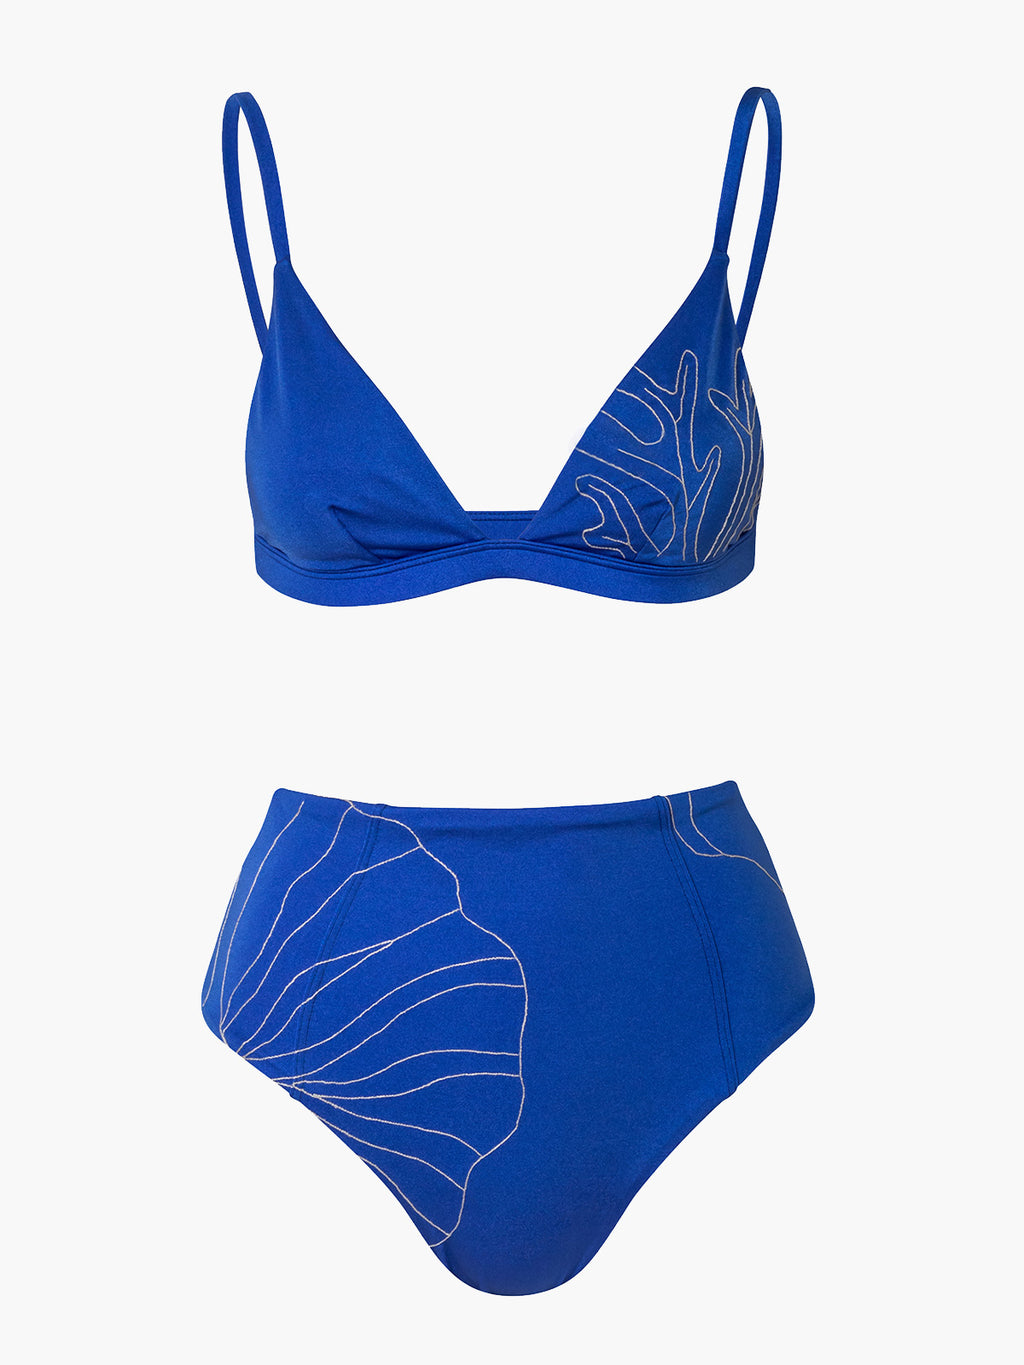 Embroidered Viareggio Bikini Set | Electric Blue